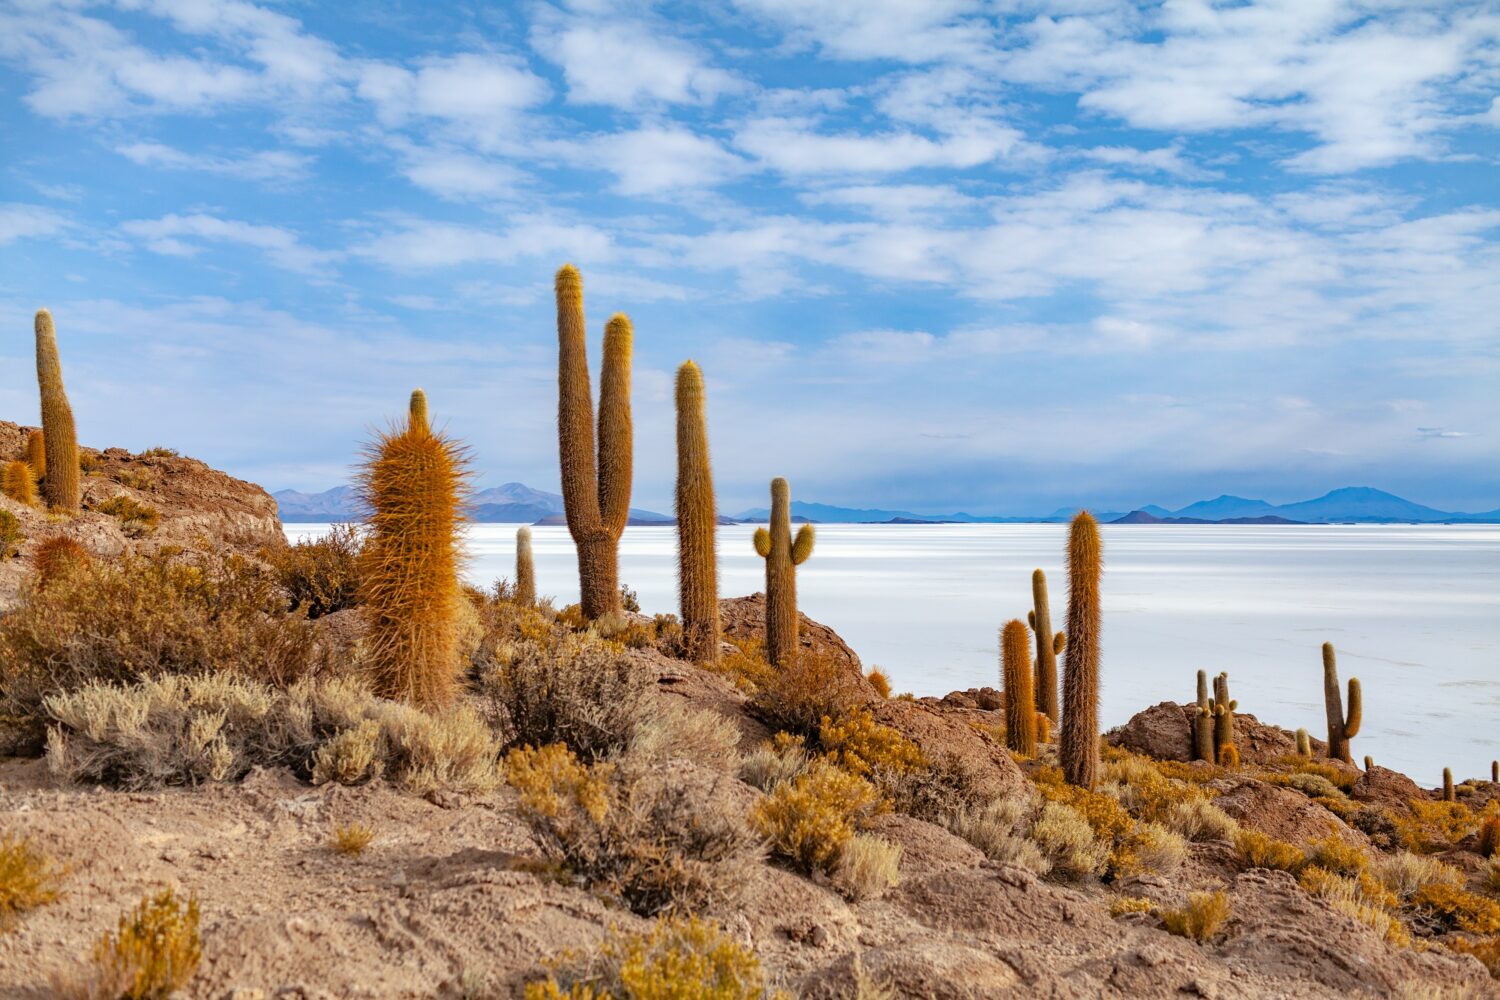 Kakteen auf der Salzwüste Uyuní in Bolivien